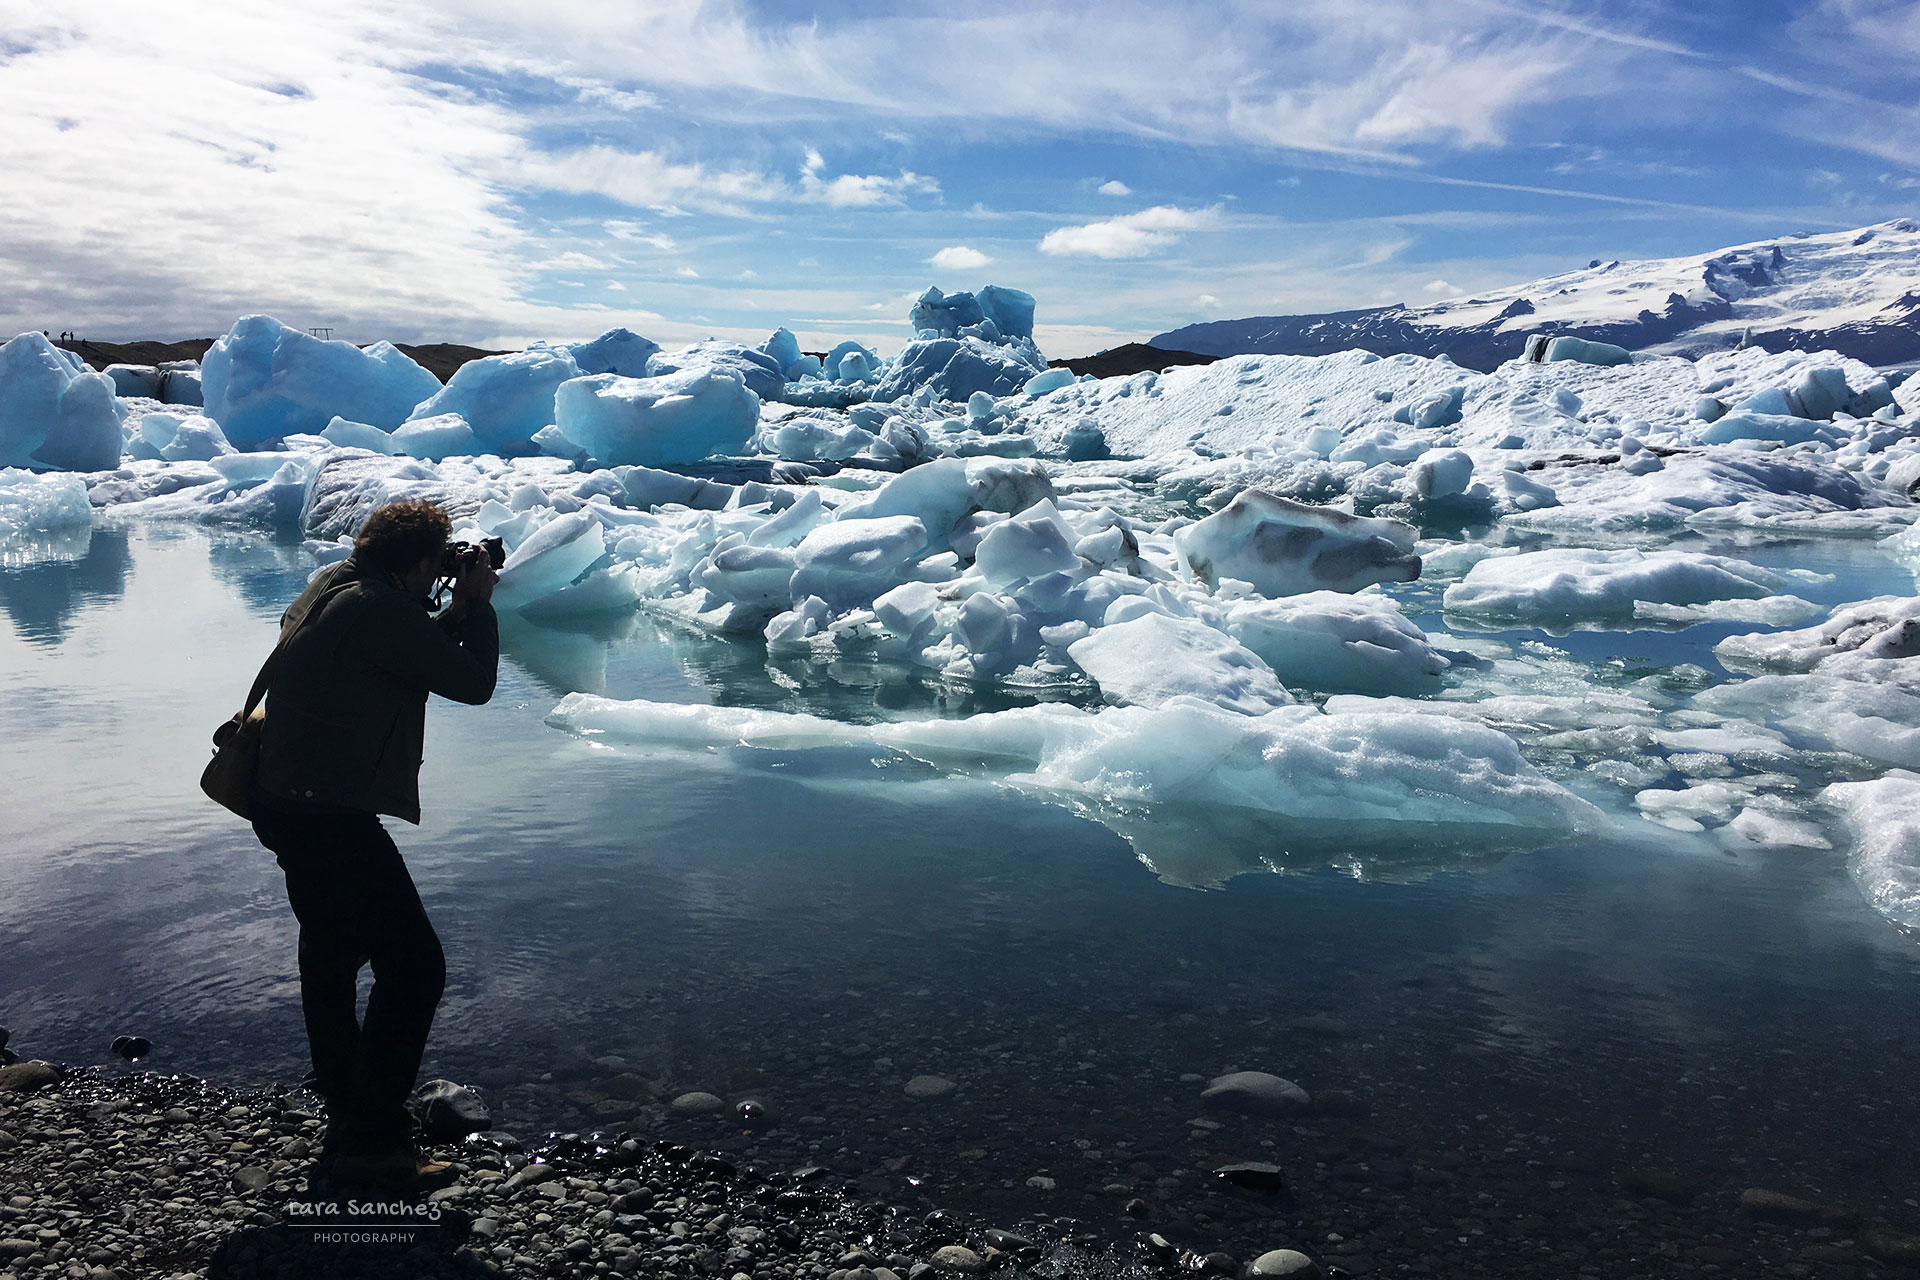 Taking pictures of the Jokulsarlon glacial lake